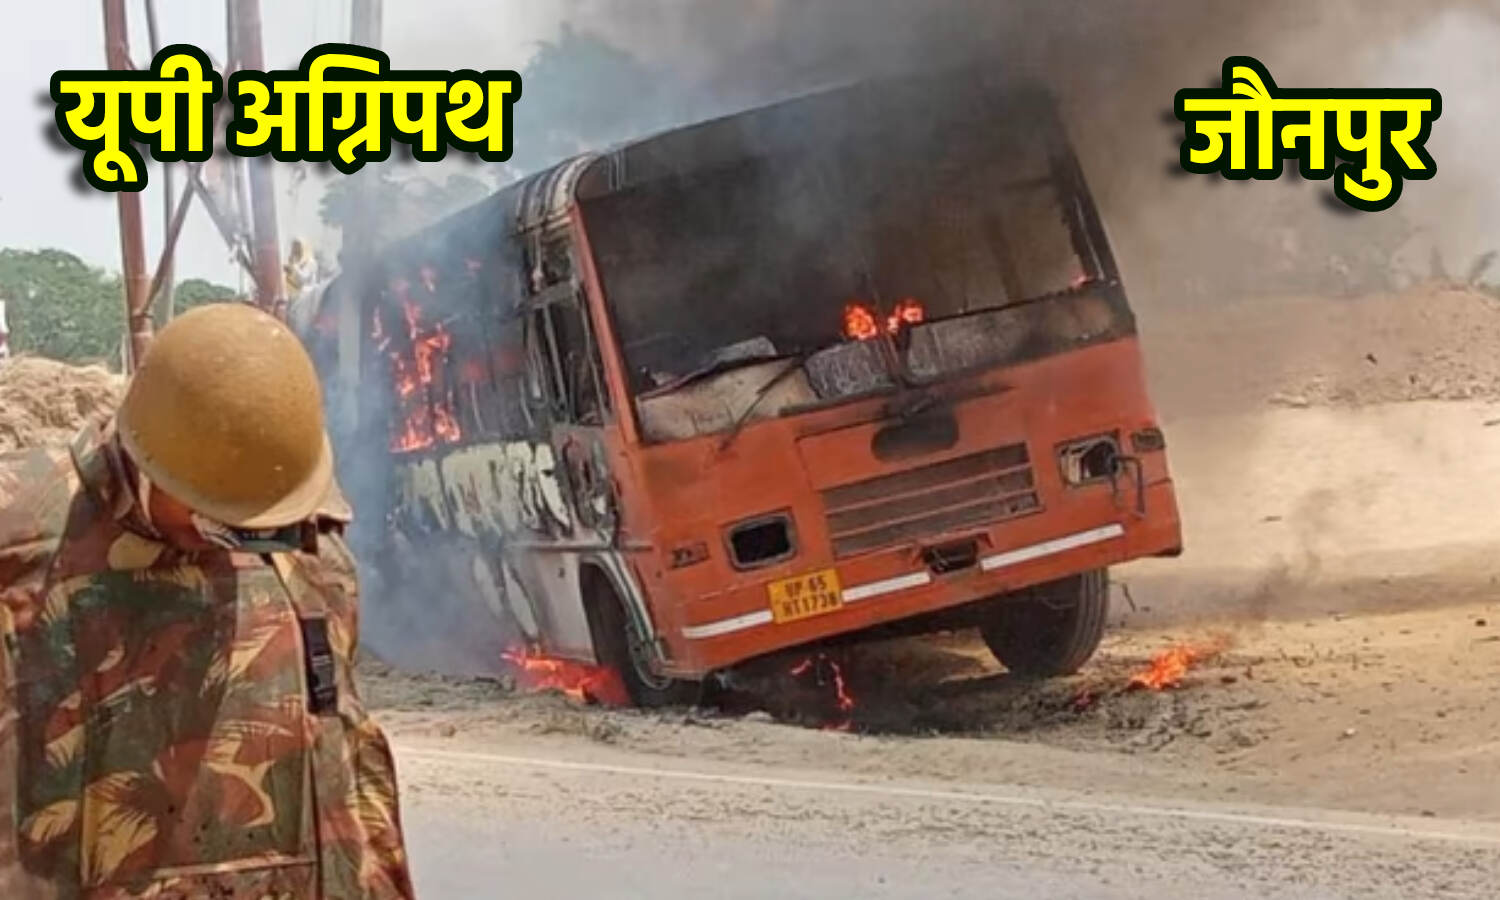 Agnipath Scheme Protest : यूपी में अग्निपथ के विरोध में कई बसों में आग लगा दी गई, धू-धू कर जलती एक बस